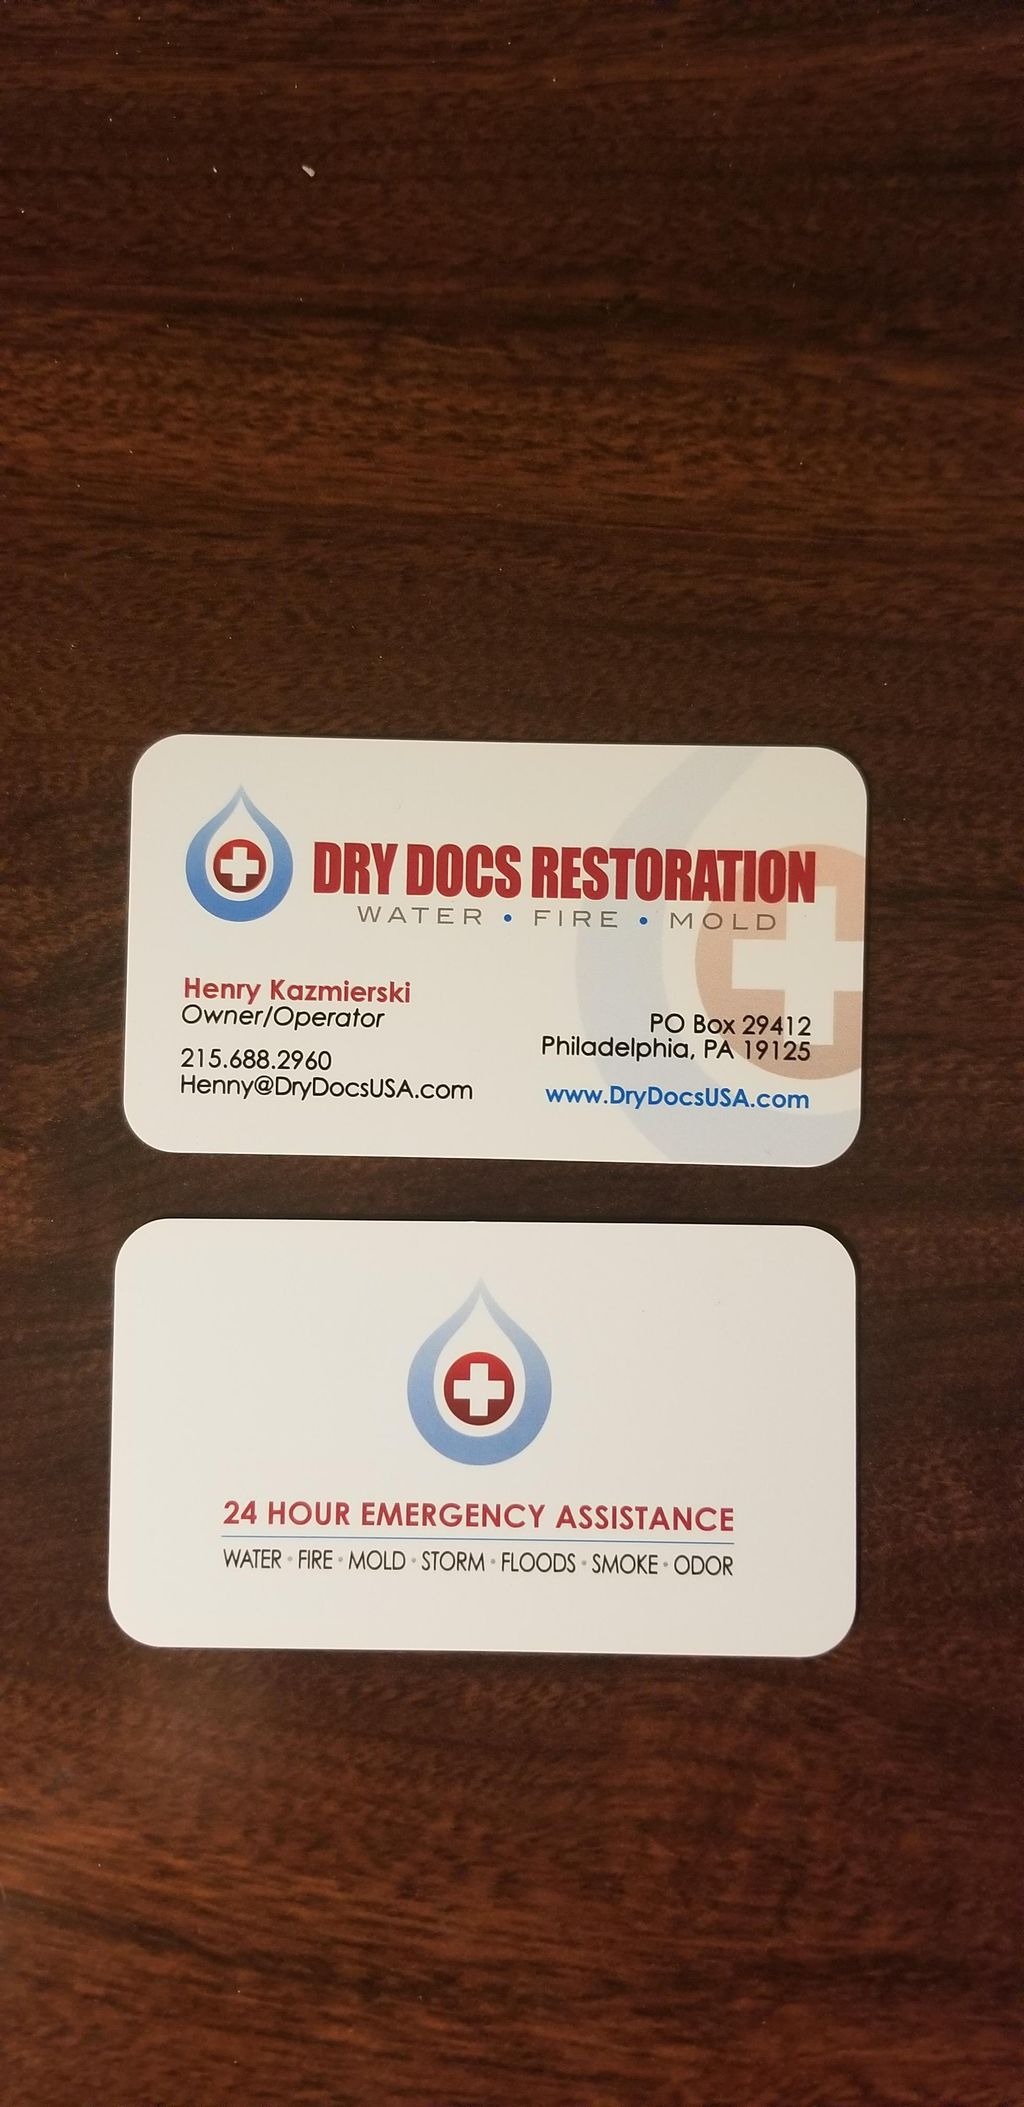 DryDocs Restoration